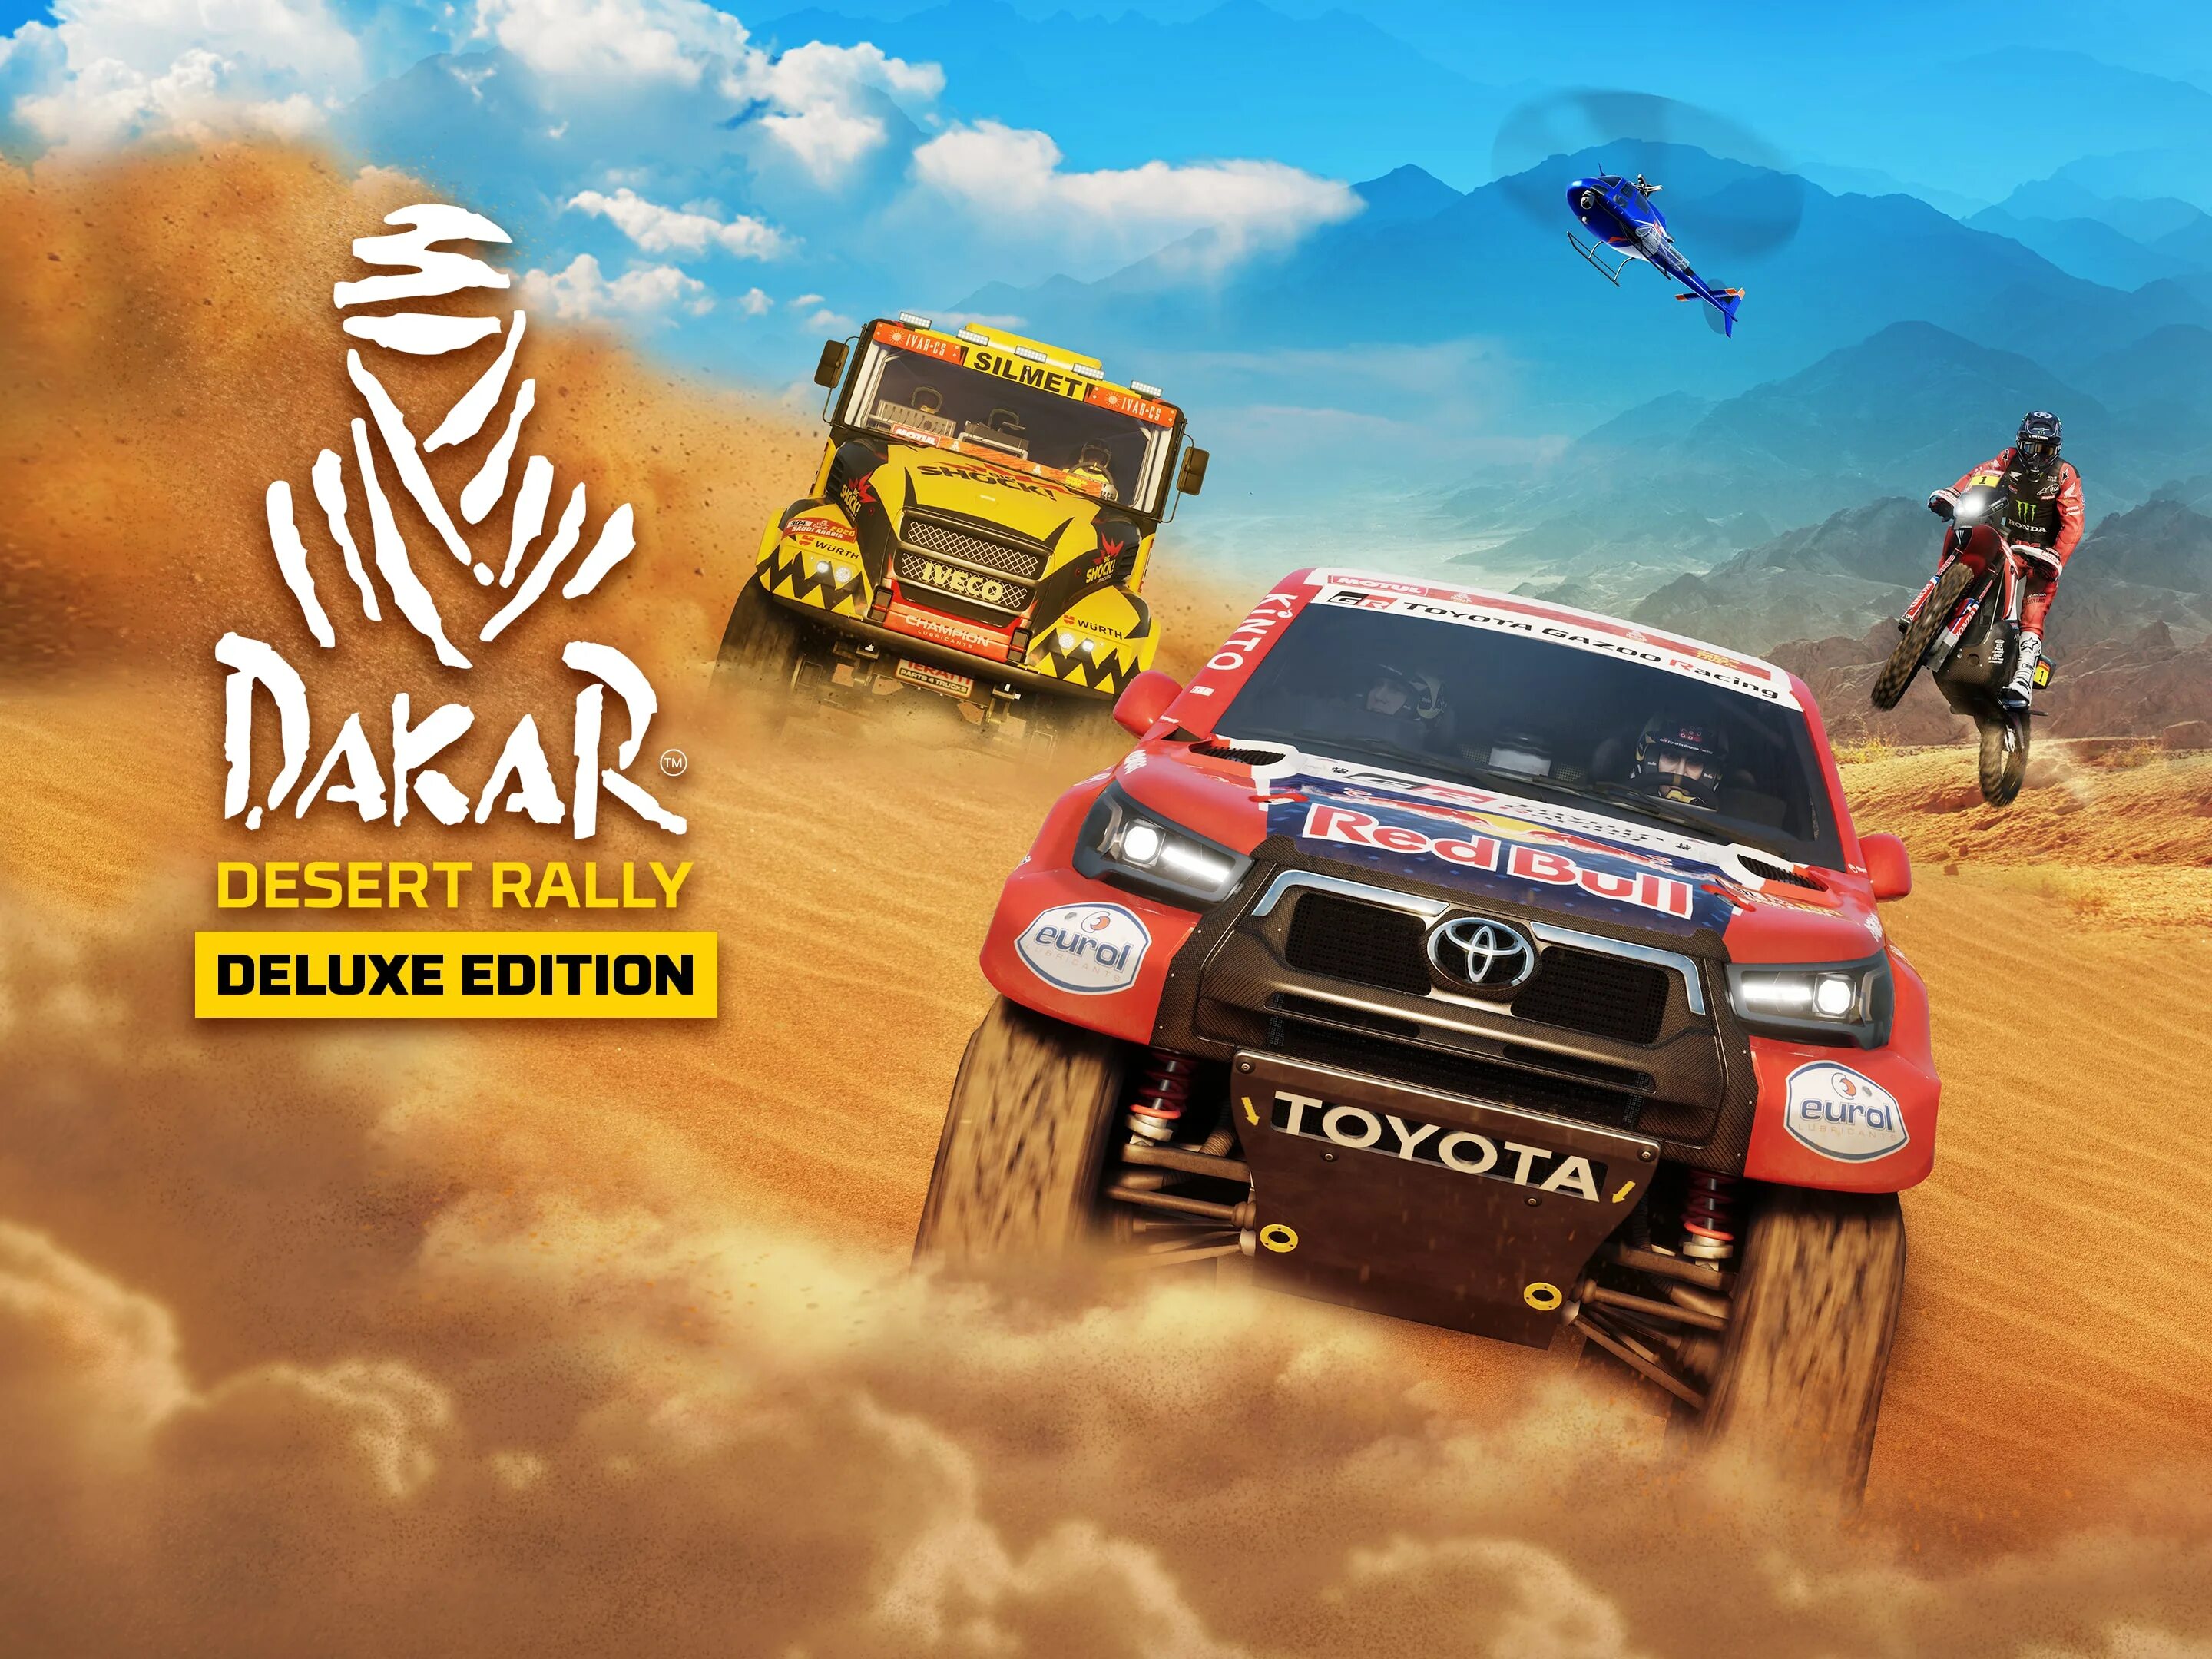 Dakar Desert Rally КАМАЗ. Dakar Desert Rally 2022. Ралли на пс4. Dakar Desert Rally машины. Гонки ралли дакар